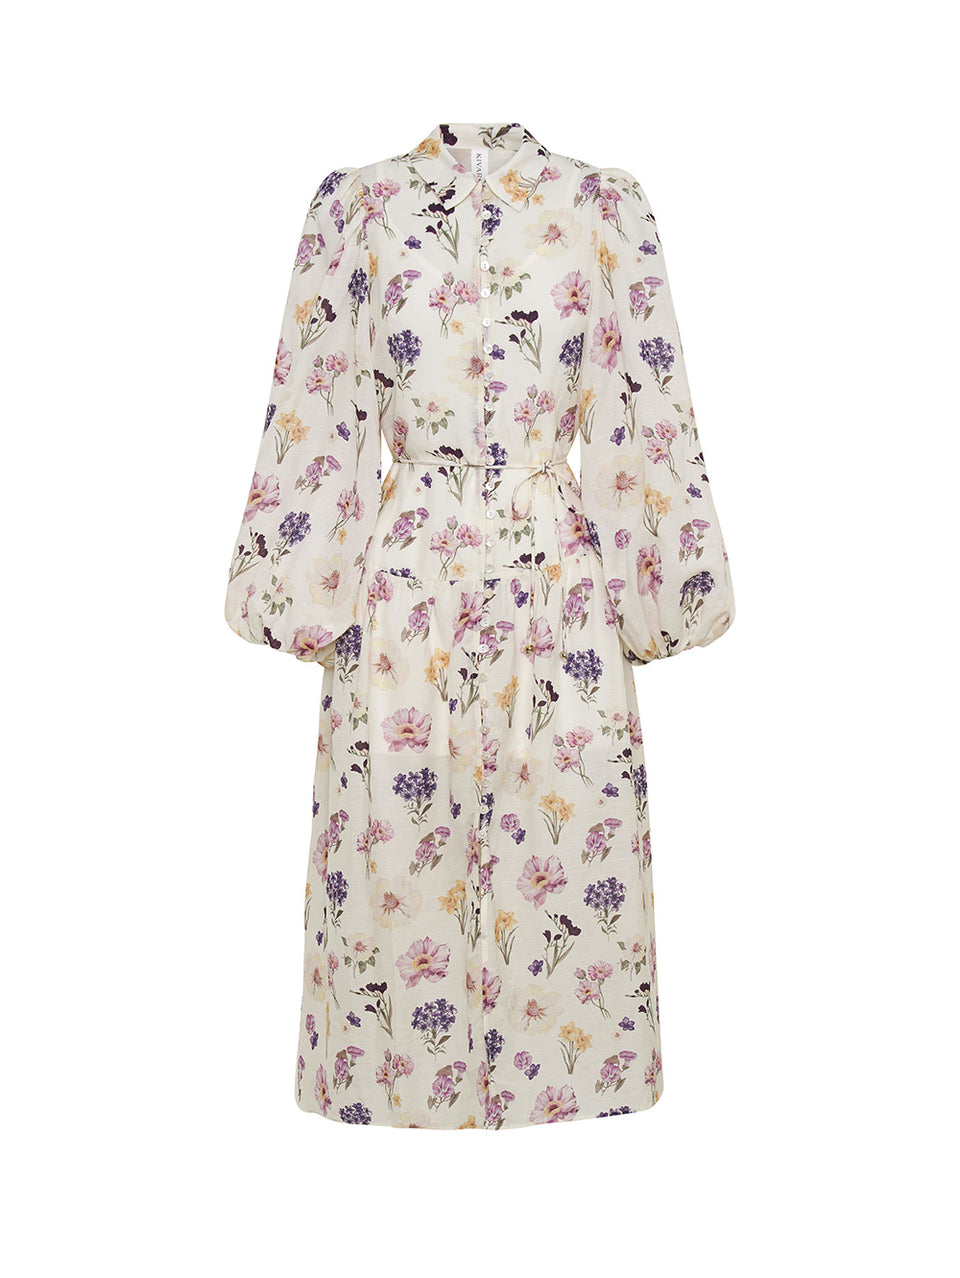 Phoebe Midi Dress KIVARI | Ivory and purple floral midi dress